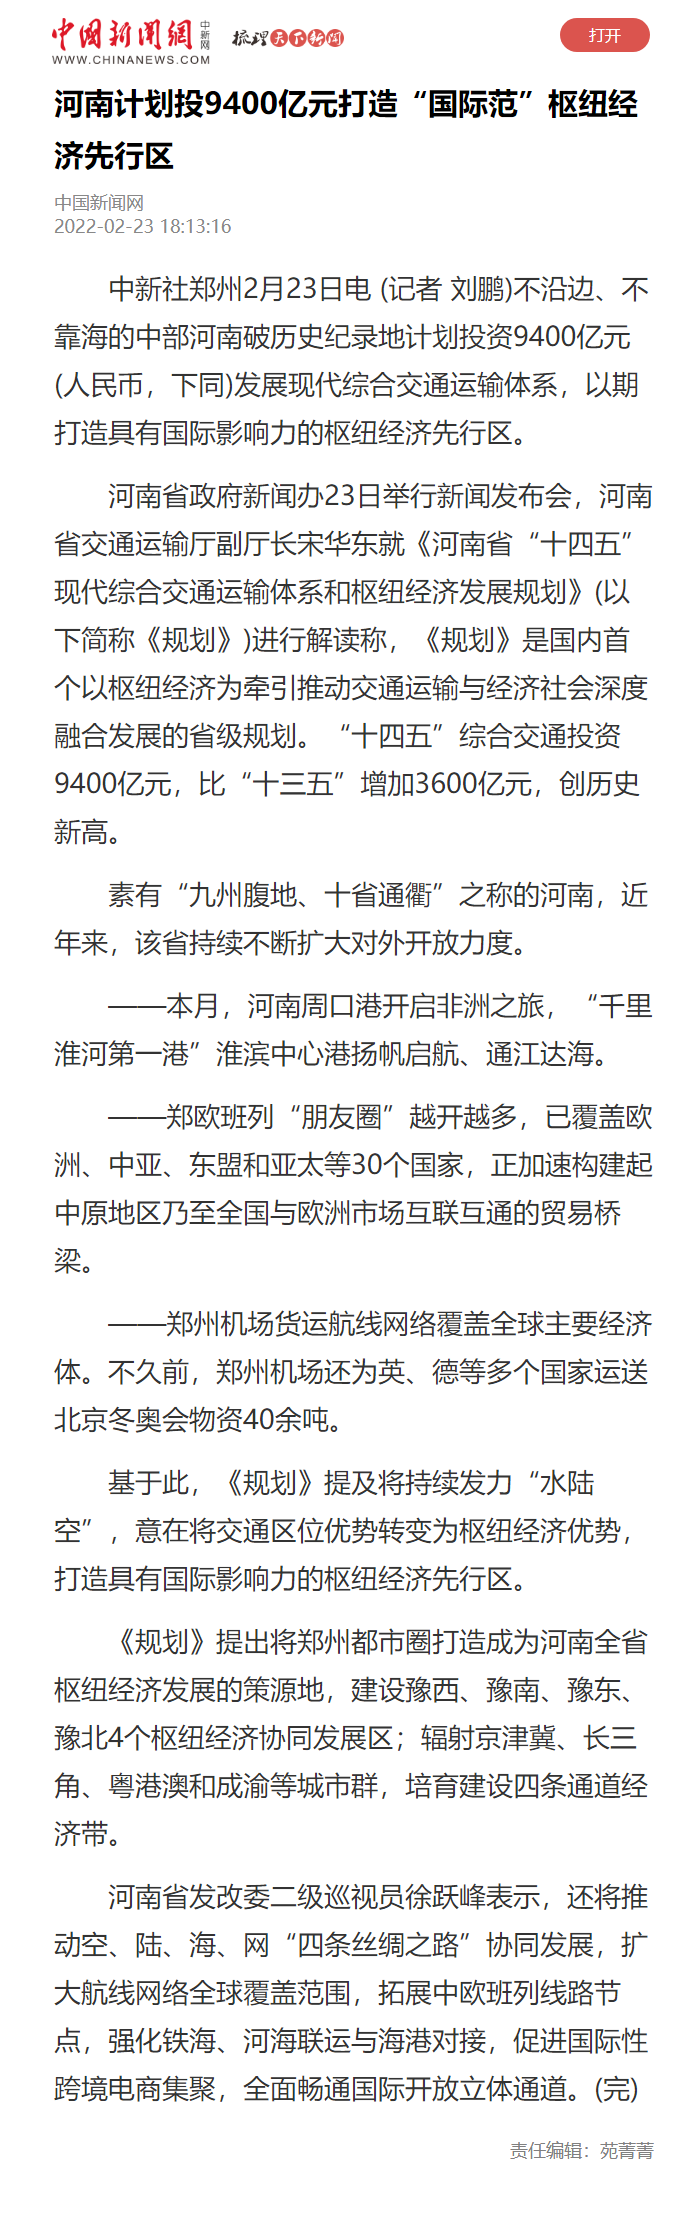 河南计划投9400亿元打造“国际范”枢纽经济先行区